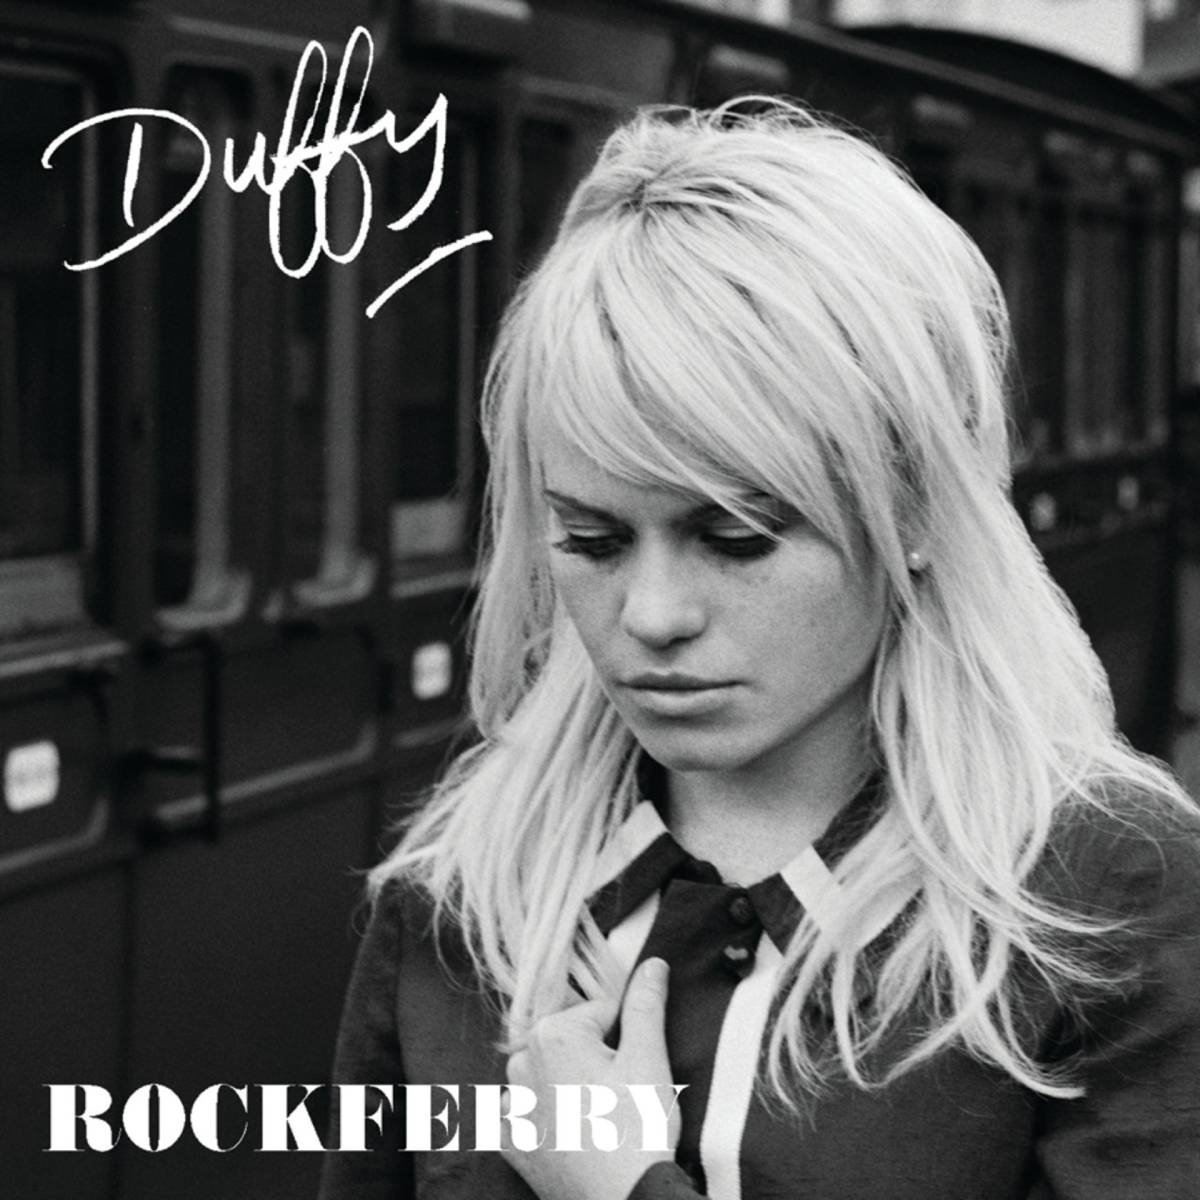 Музыкальный альбом Rockferry певицы Даффи